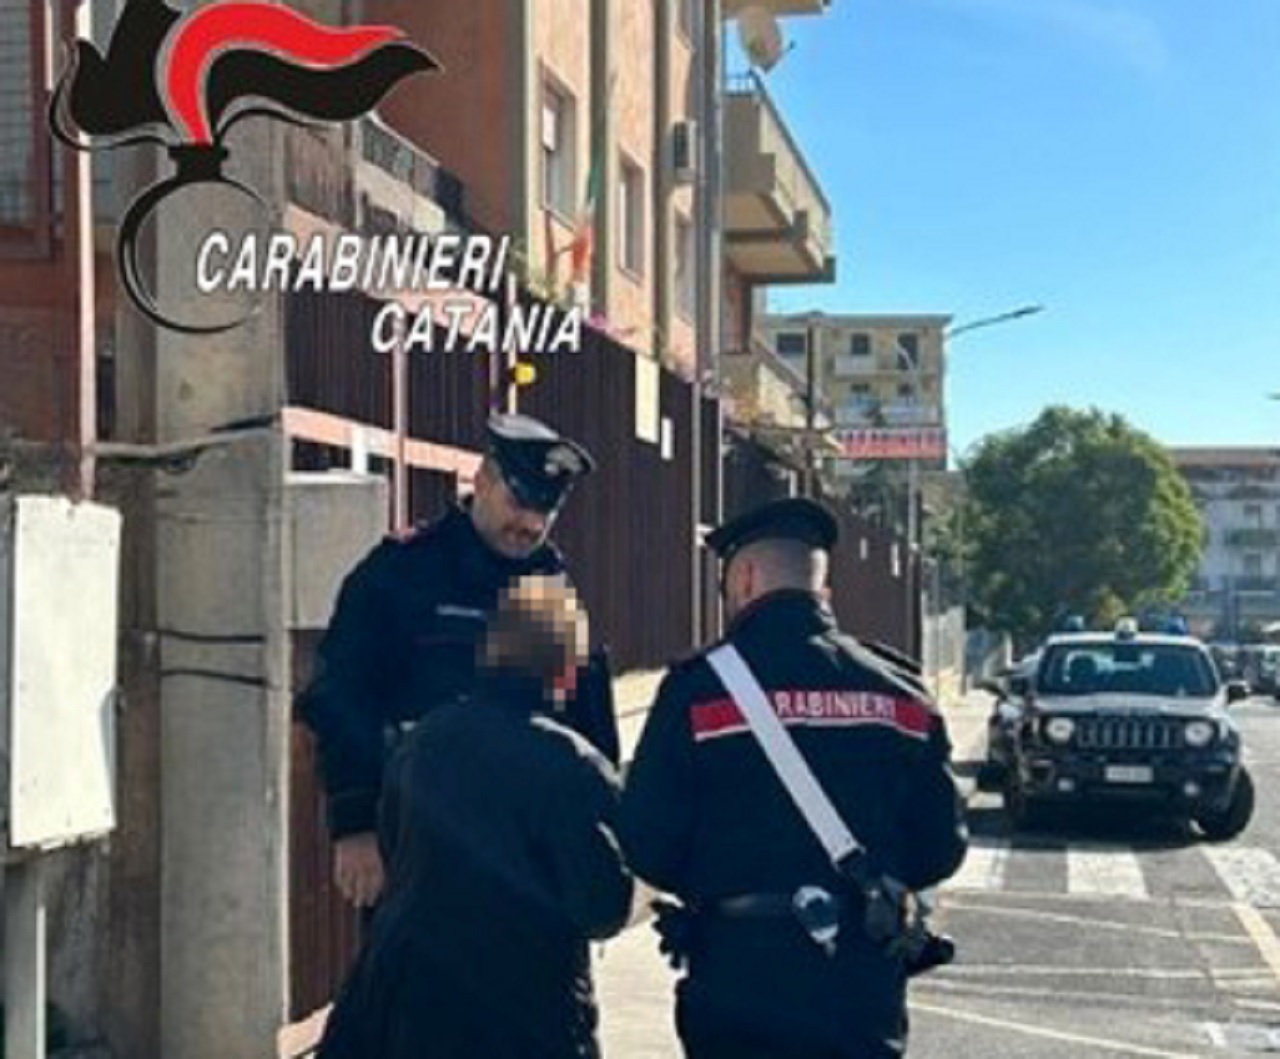 “Tua nipote ha causato un incidente, paga i danni”: pensionata truffata da finto carabiniere